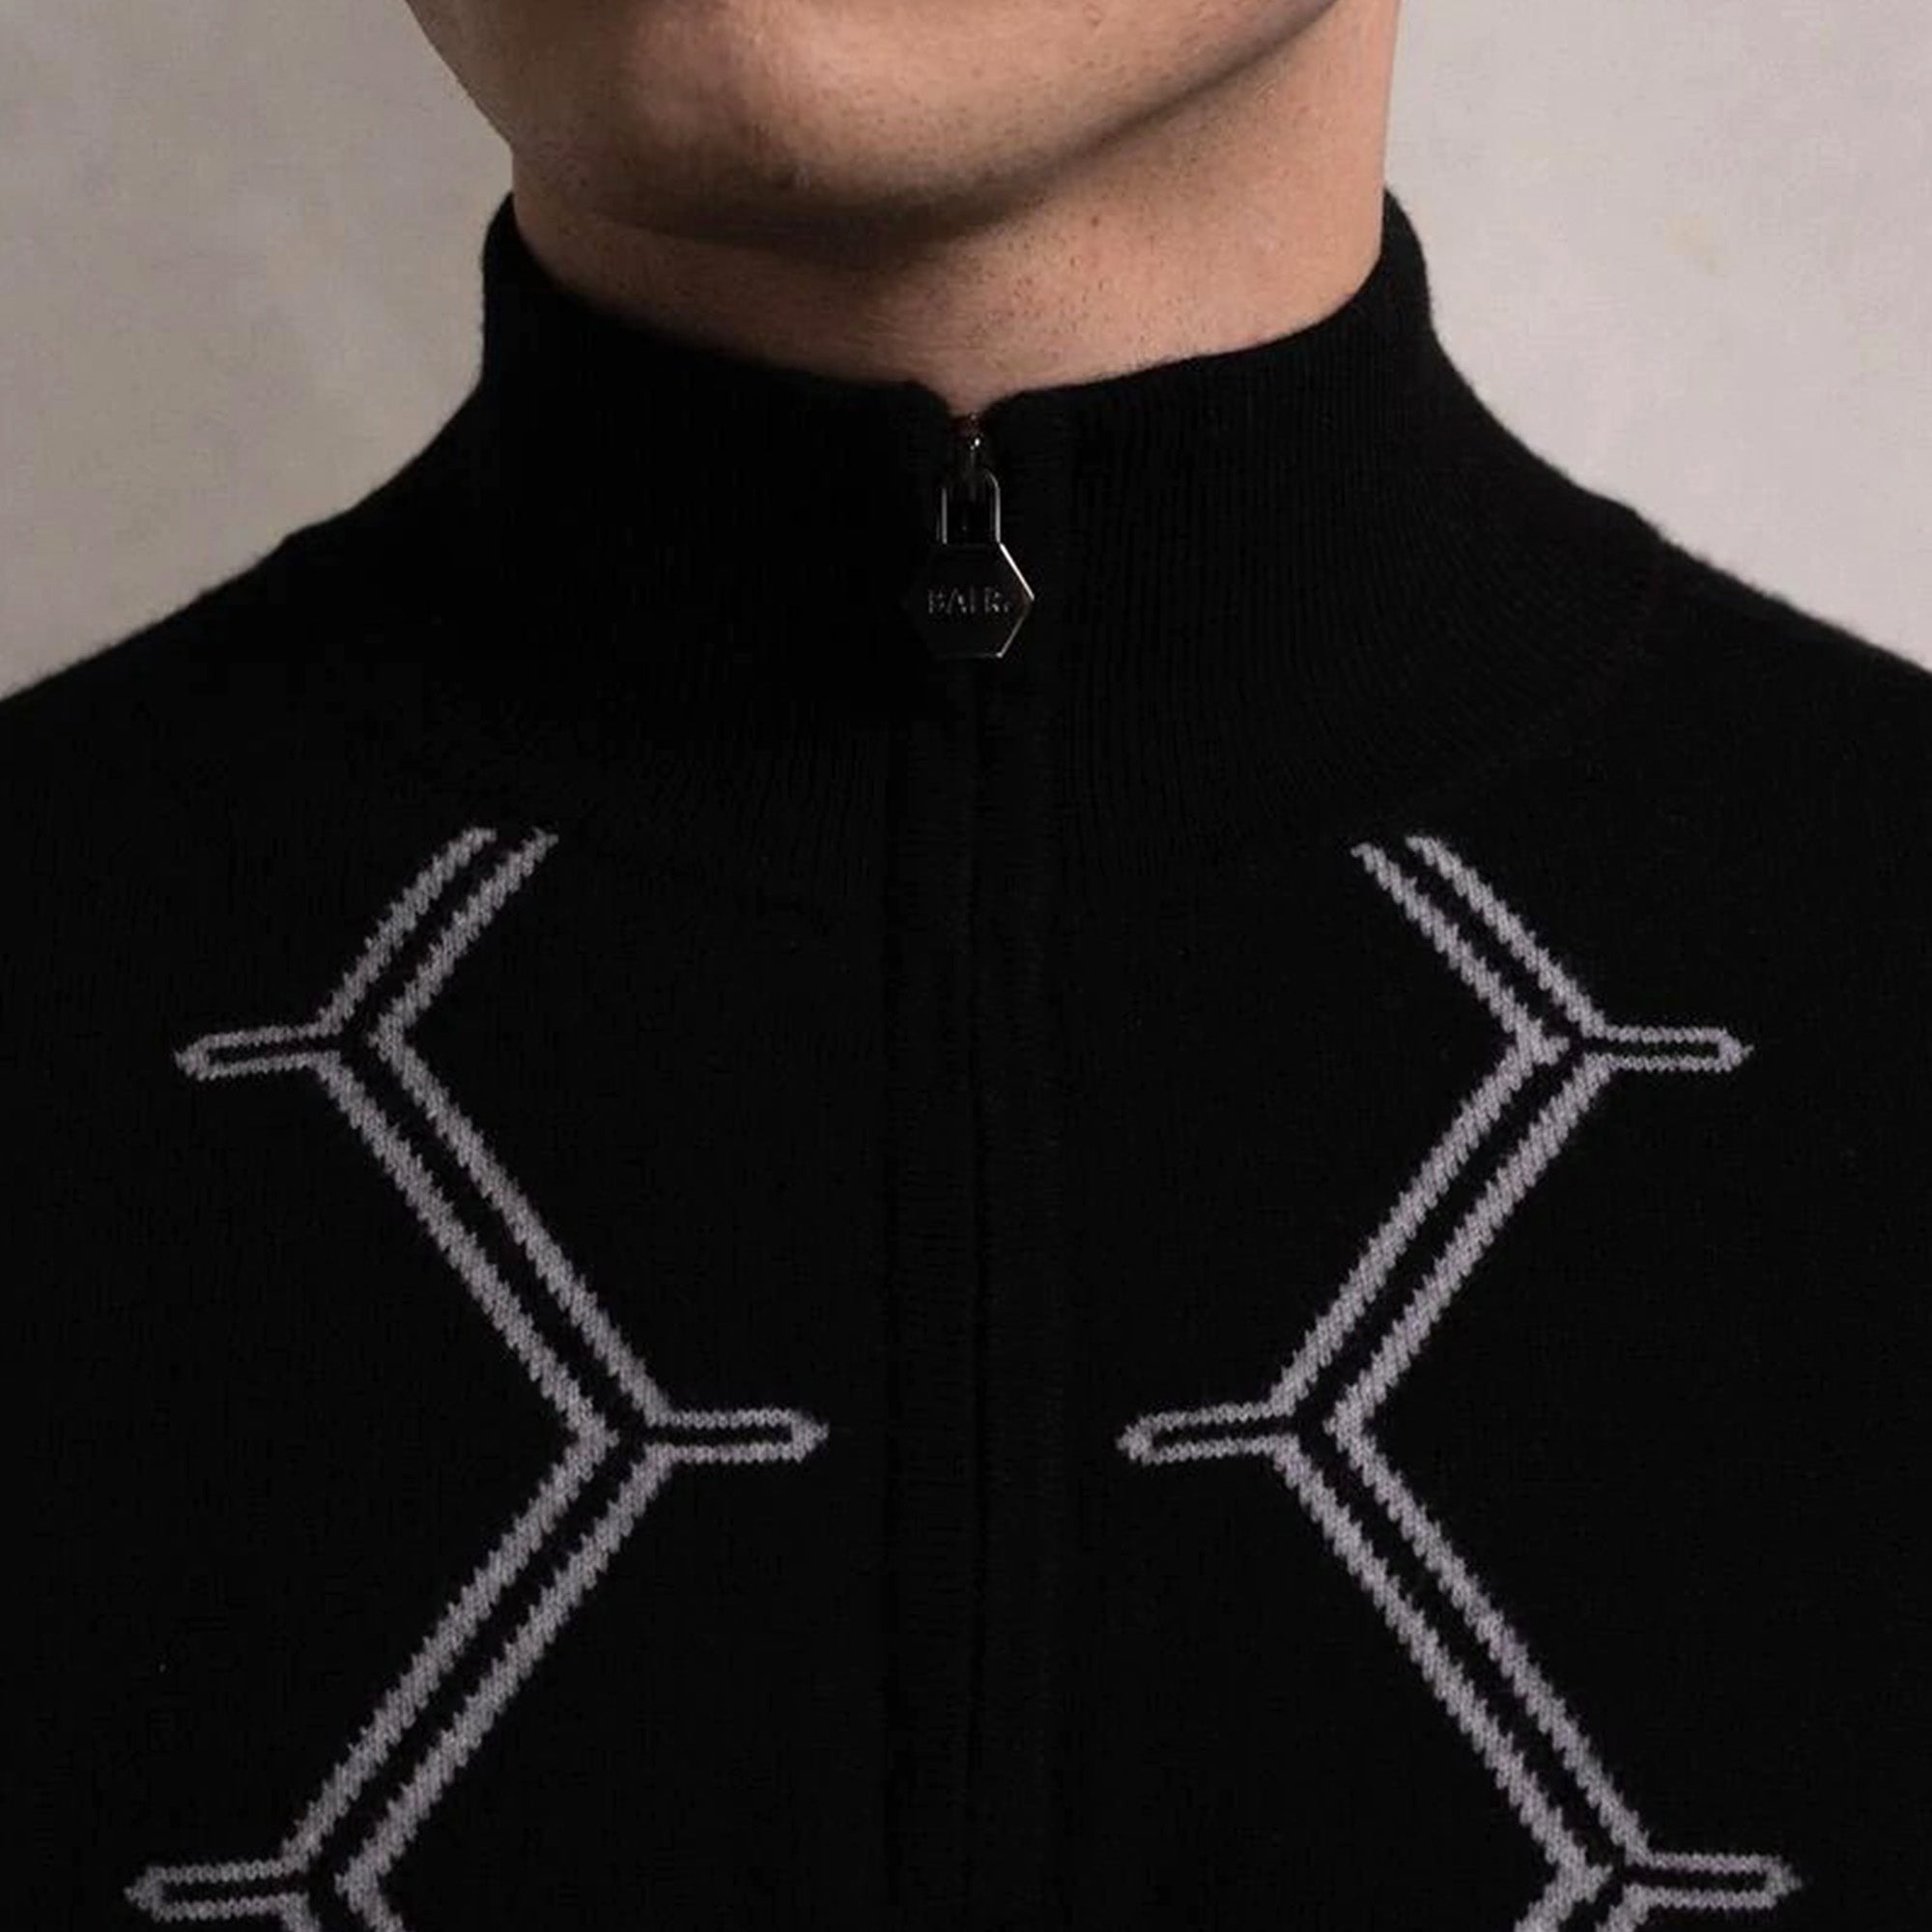 Balr Don Regular Hexagon Quarter Zip Black Knitwear Jacket